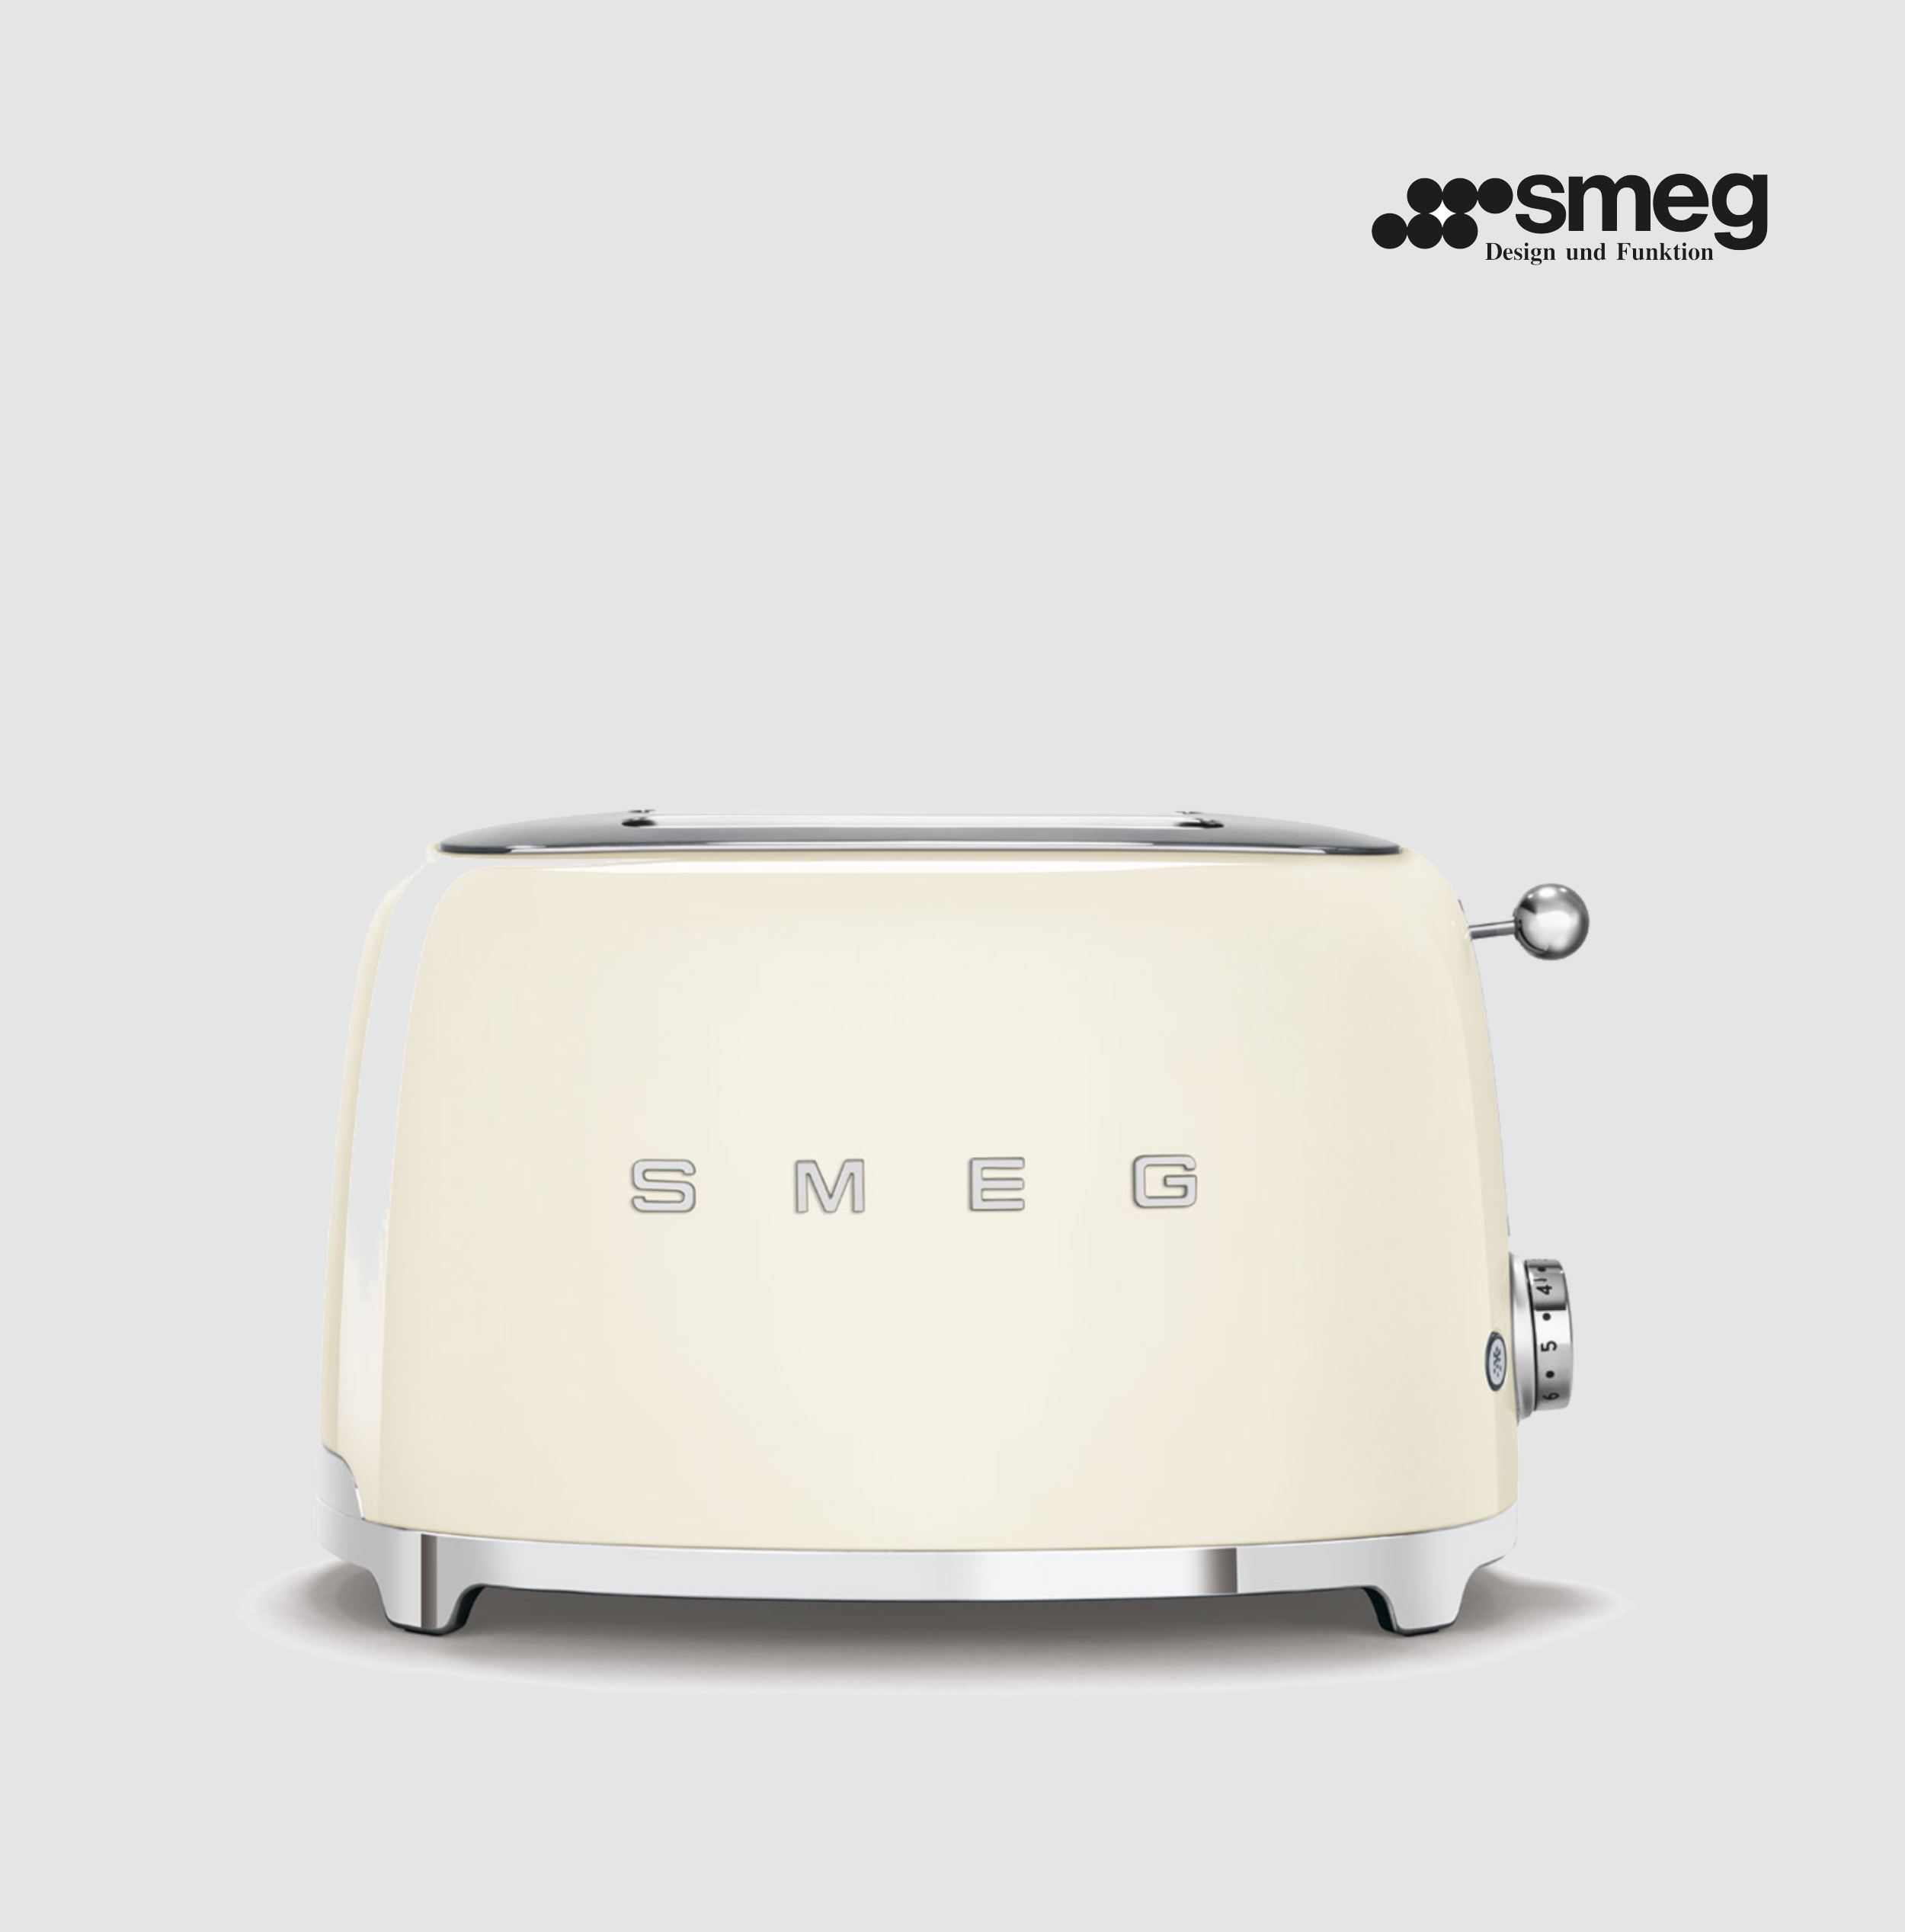 toasterbeigesmeg_a7b85916-1781-47a9-b8db-dccd1e153558 - Smeg Point - Online Handel